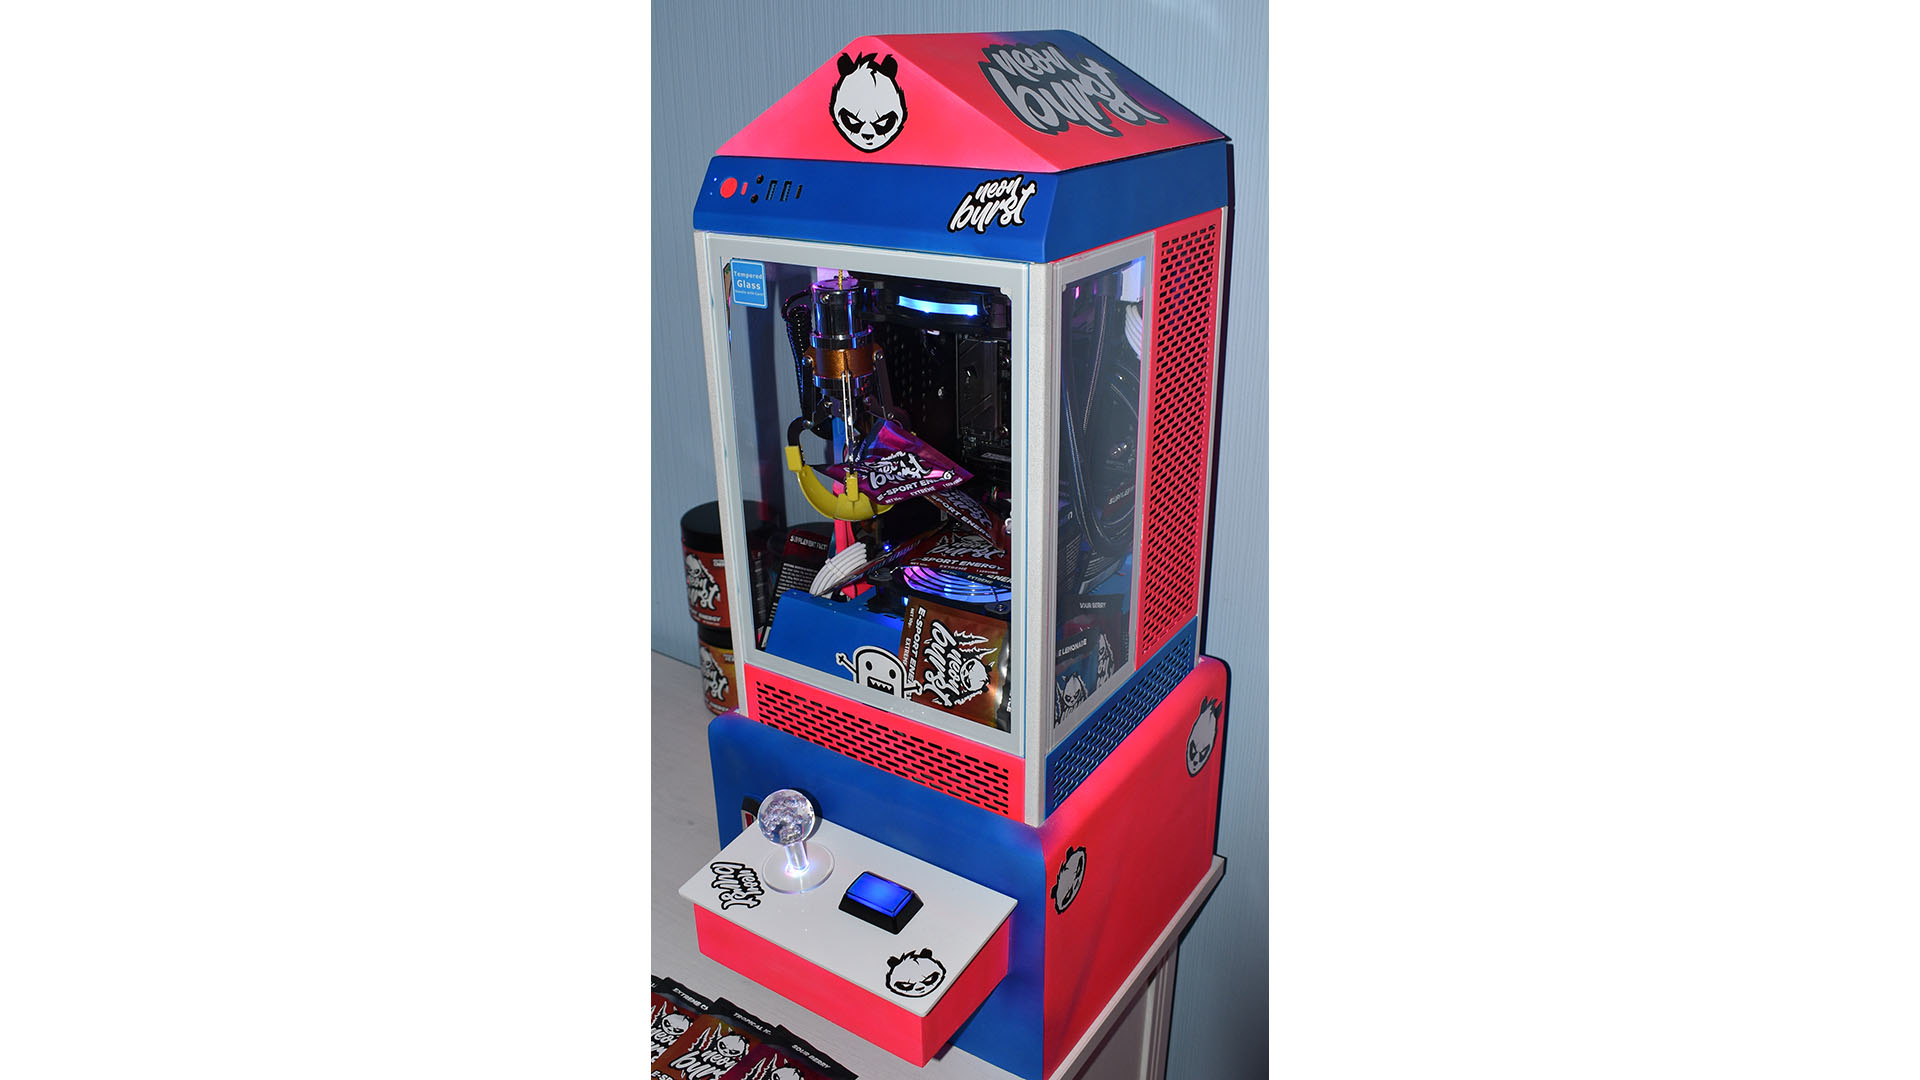 La PC para juegos arcade con garras en azul y rojo